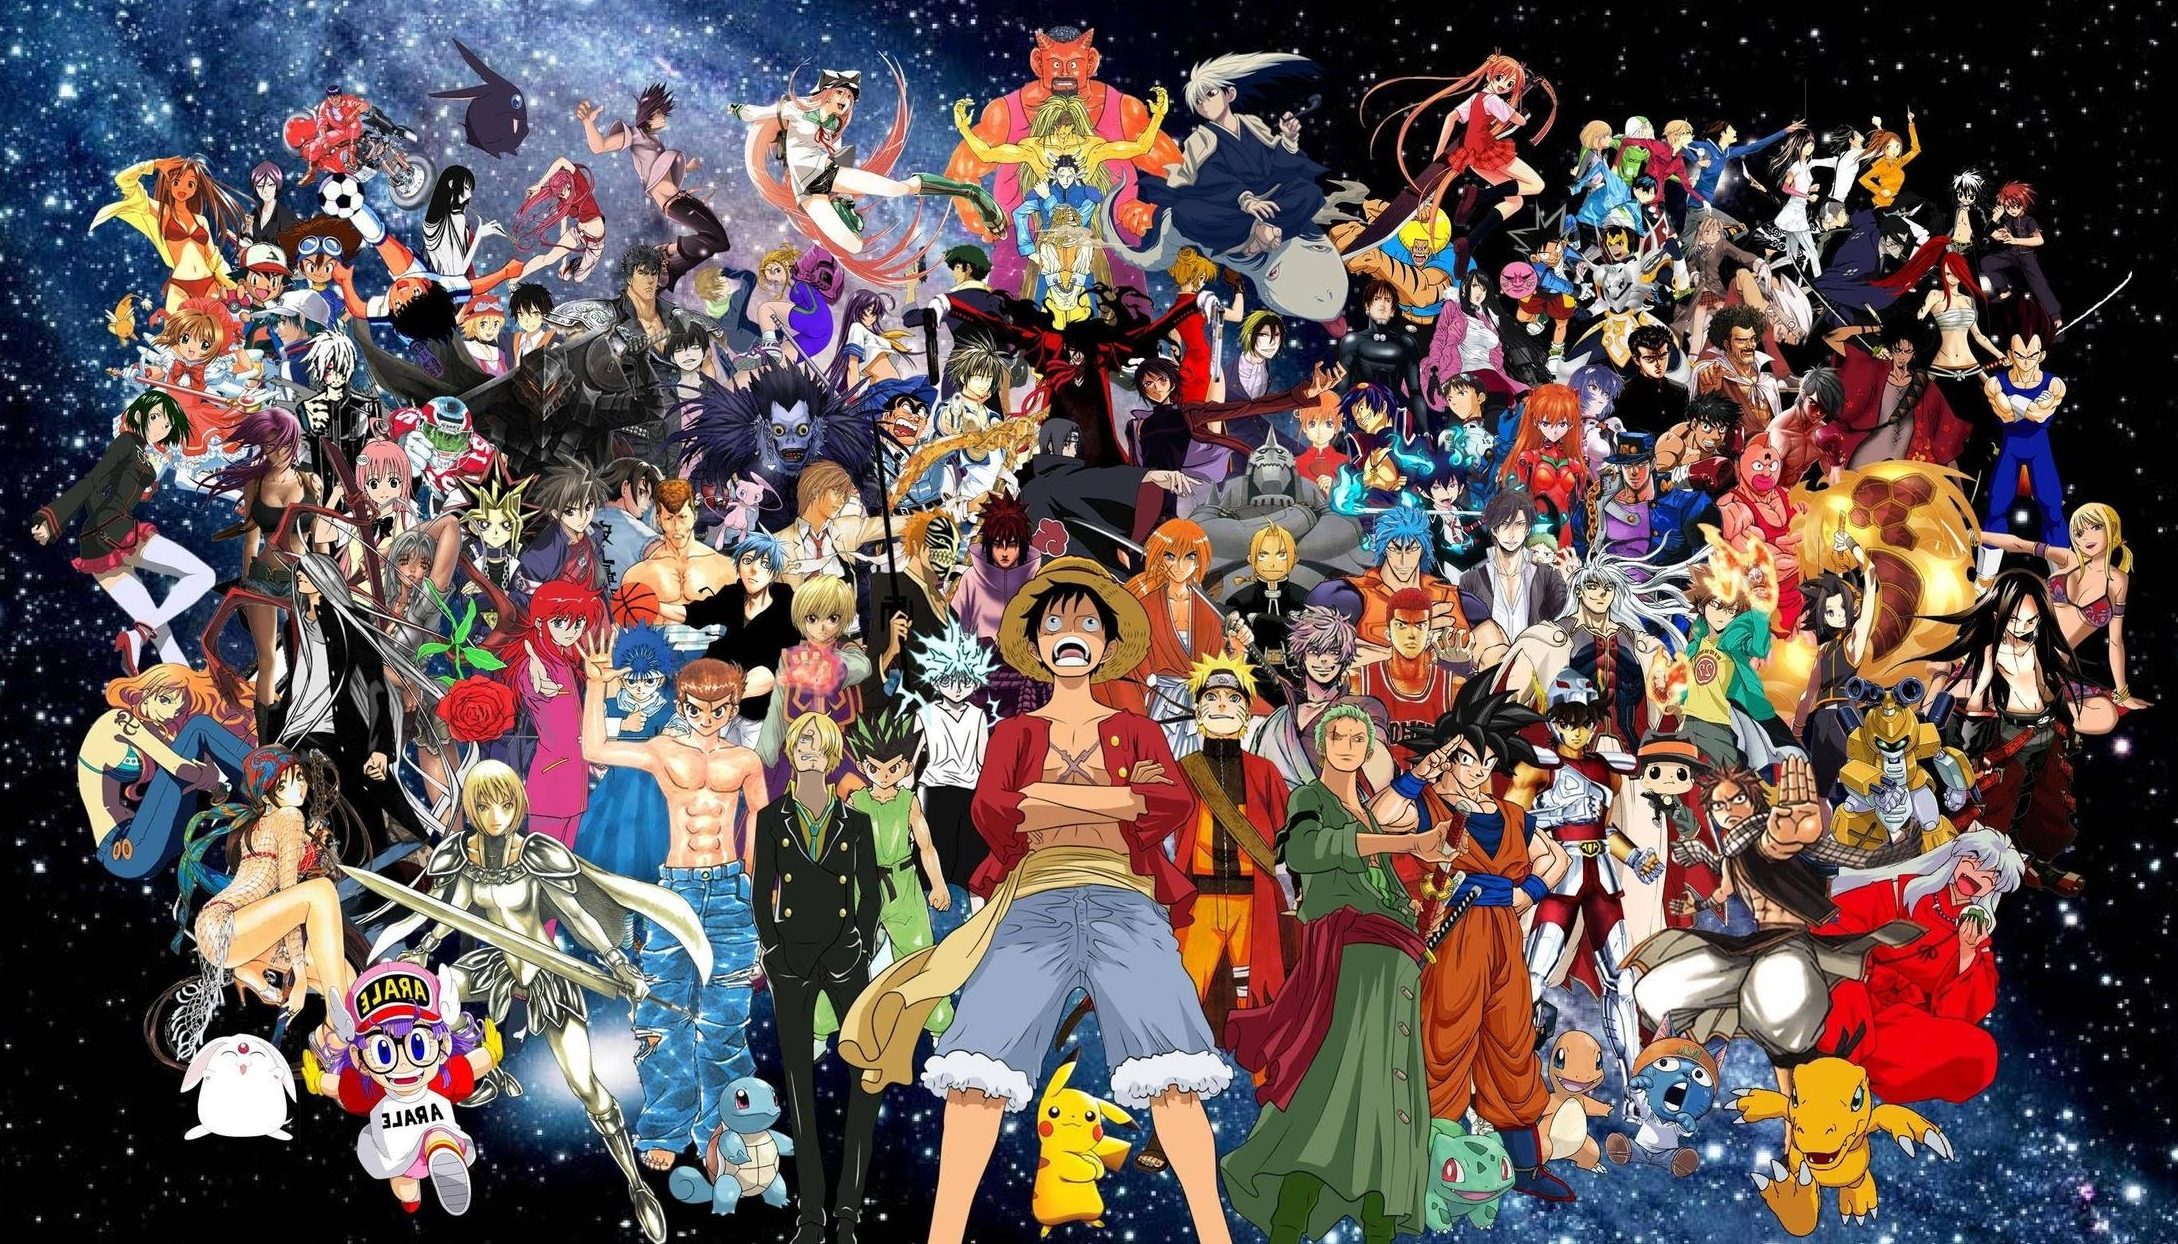 alle anime charaktere wallpaper,menschen,menge,kunst,veranstaltung,karneval